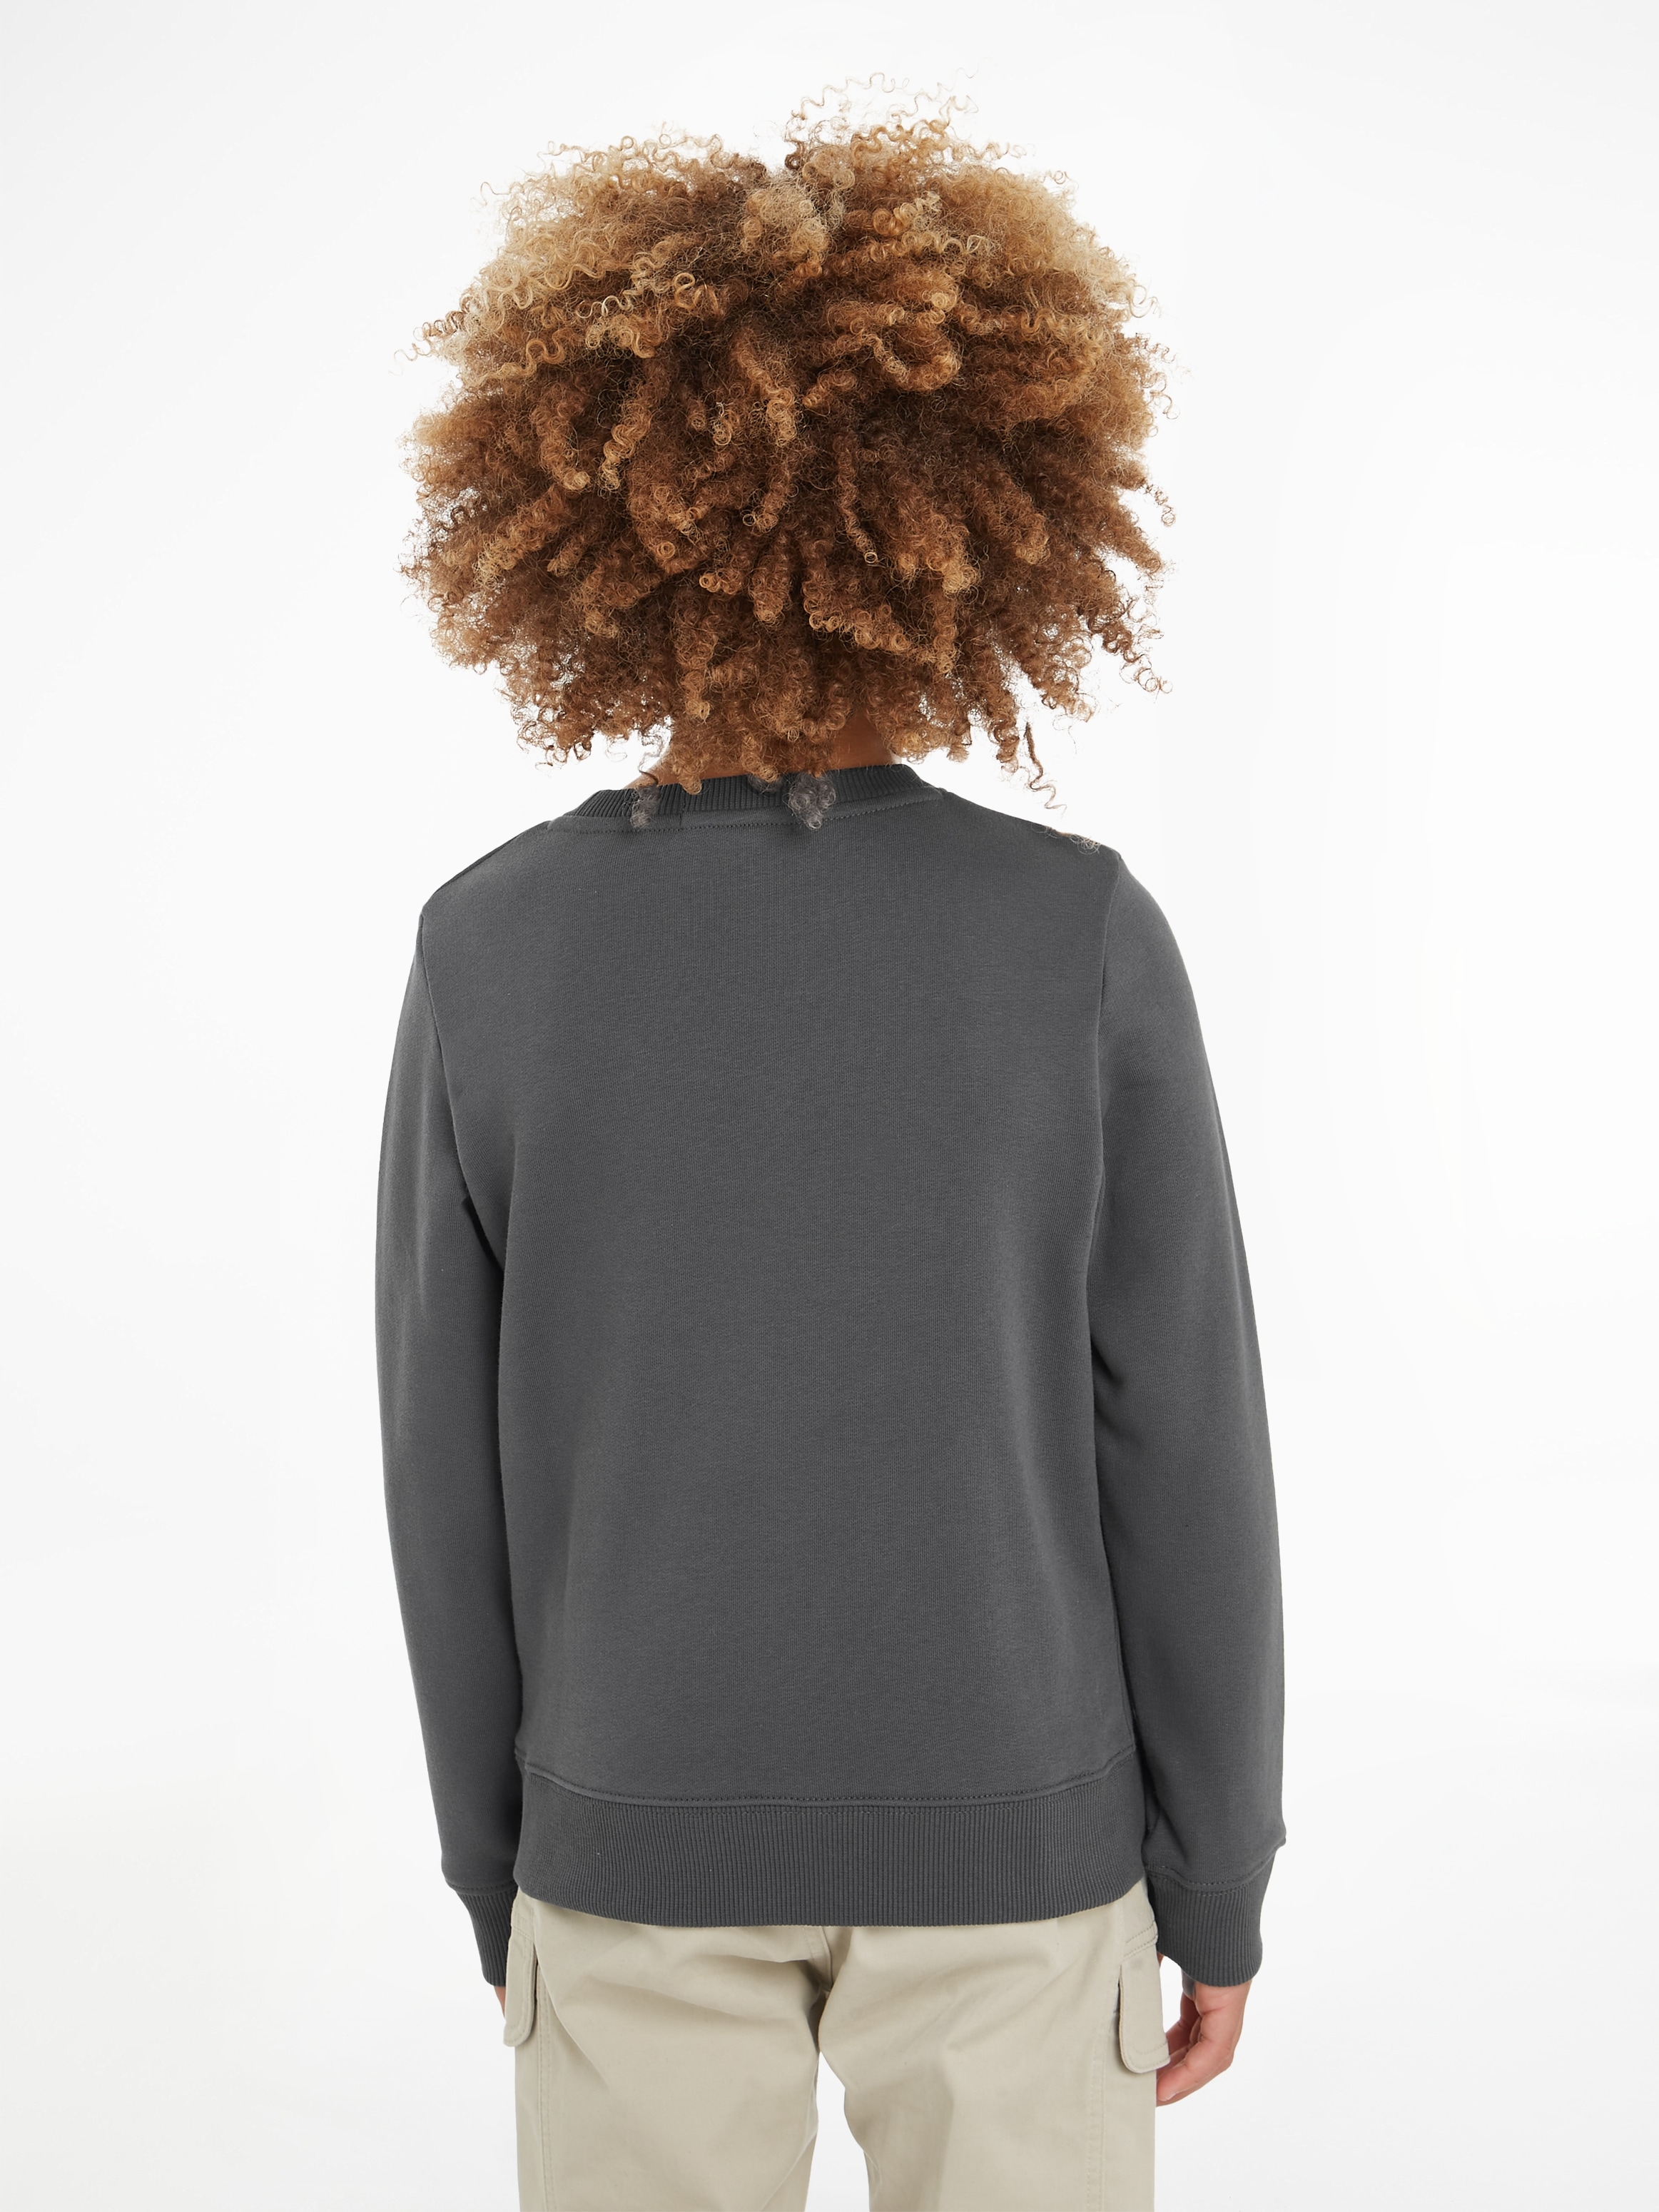 Calvin Klein Jeans Sweatshirt »CKJ STACK LOGO SWEATSHIRT«, für Kinder bis 16 Jahre